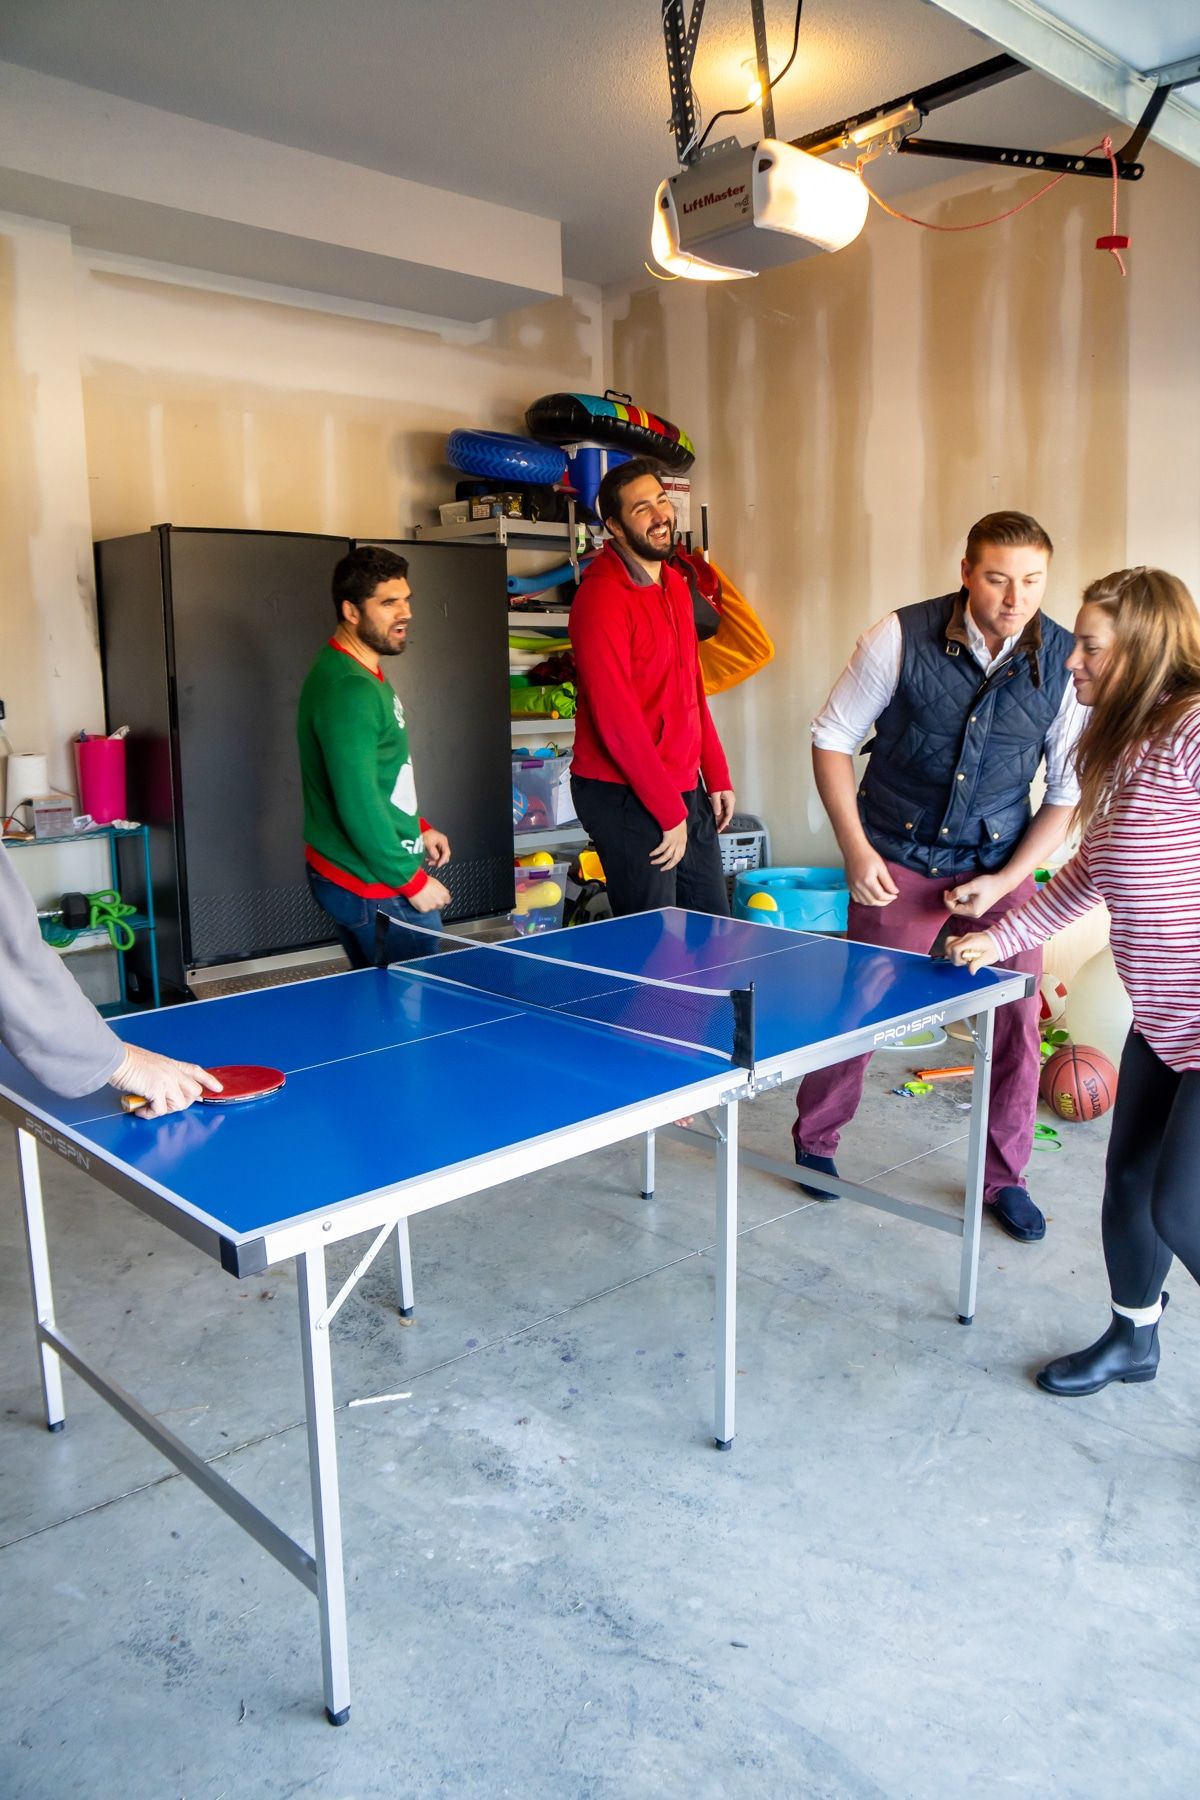 Οικογένεια που παίζει παιχνίδια πινγκ πονγκ γύρω από ένα τραπέζι πινγκ πονγκ